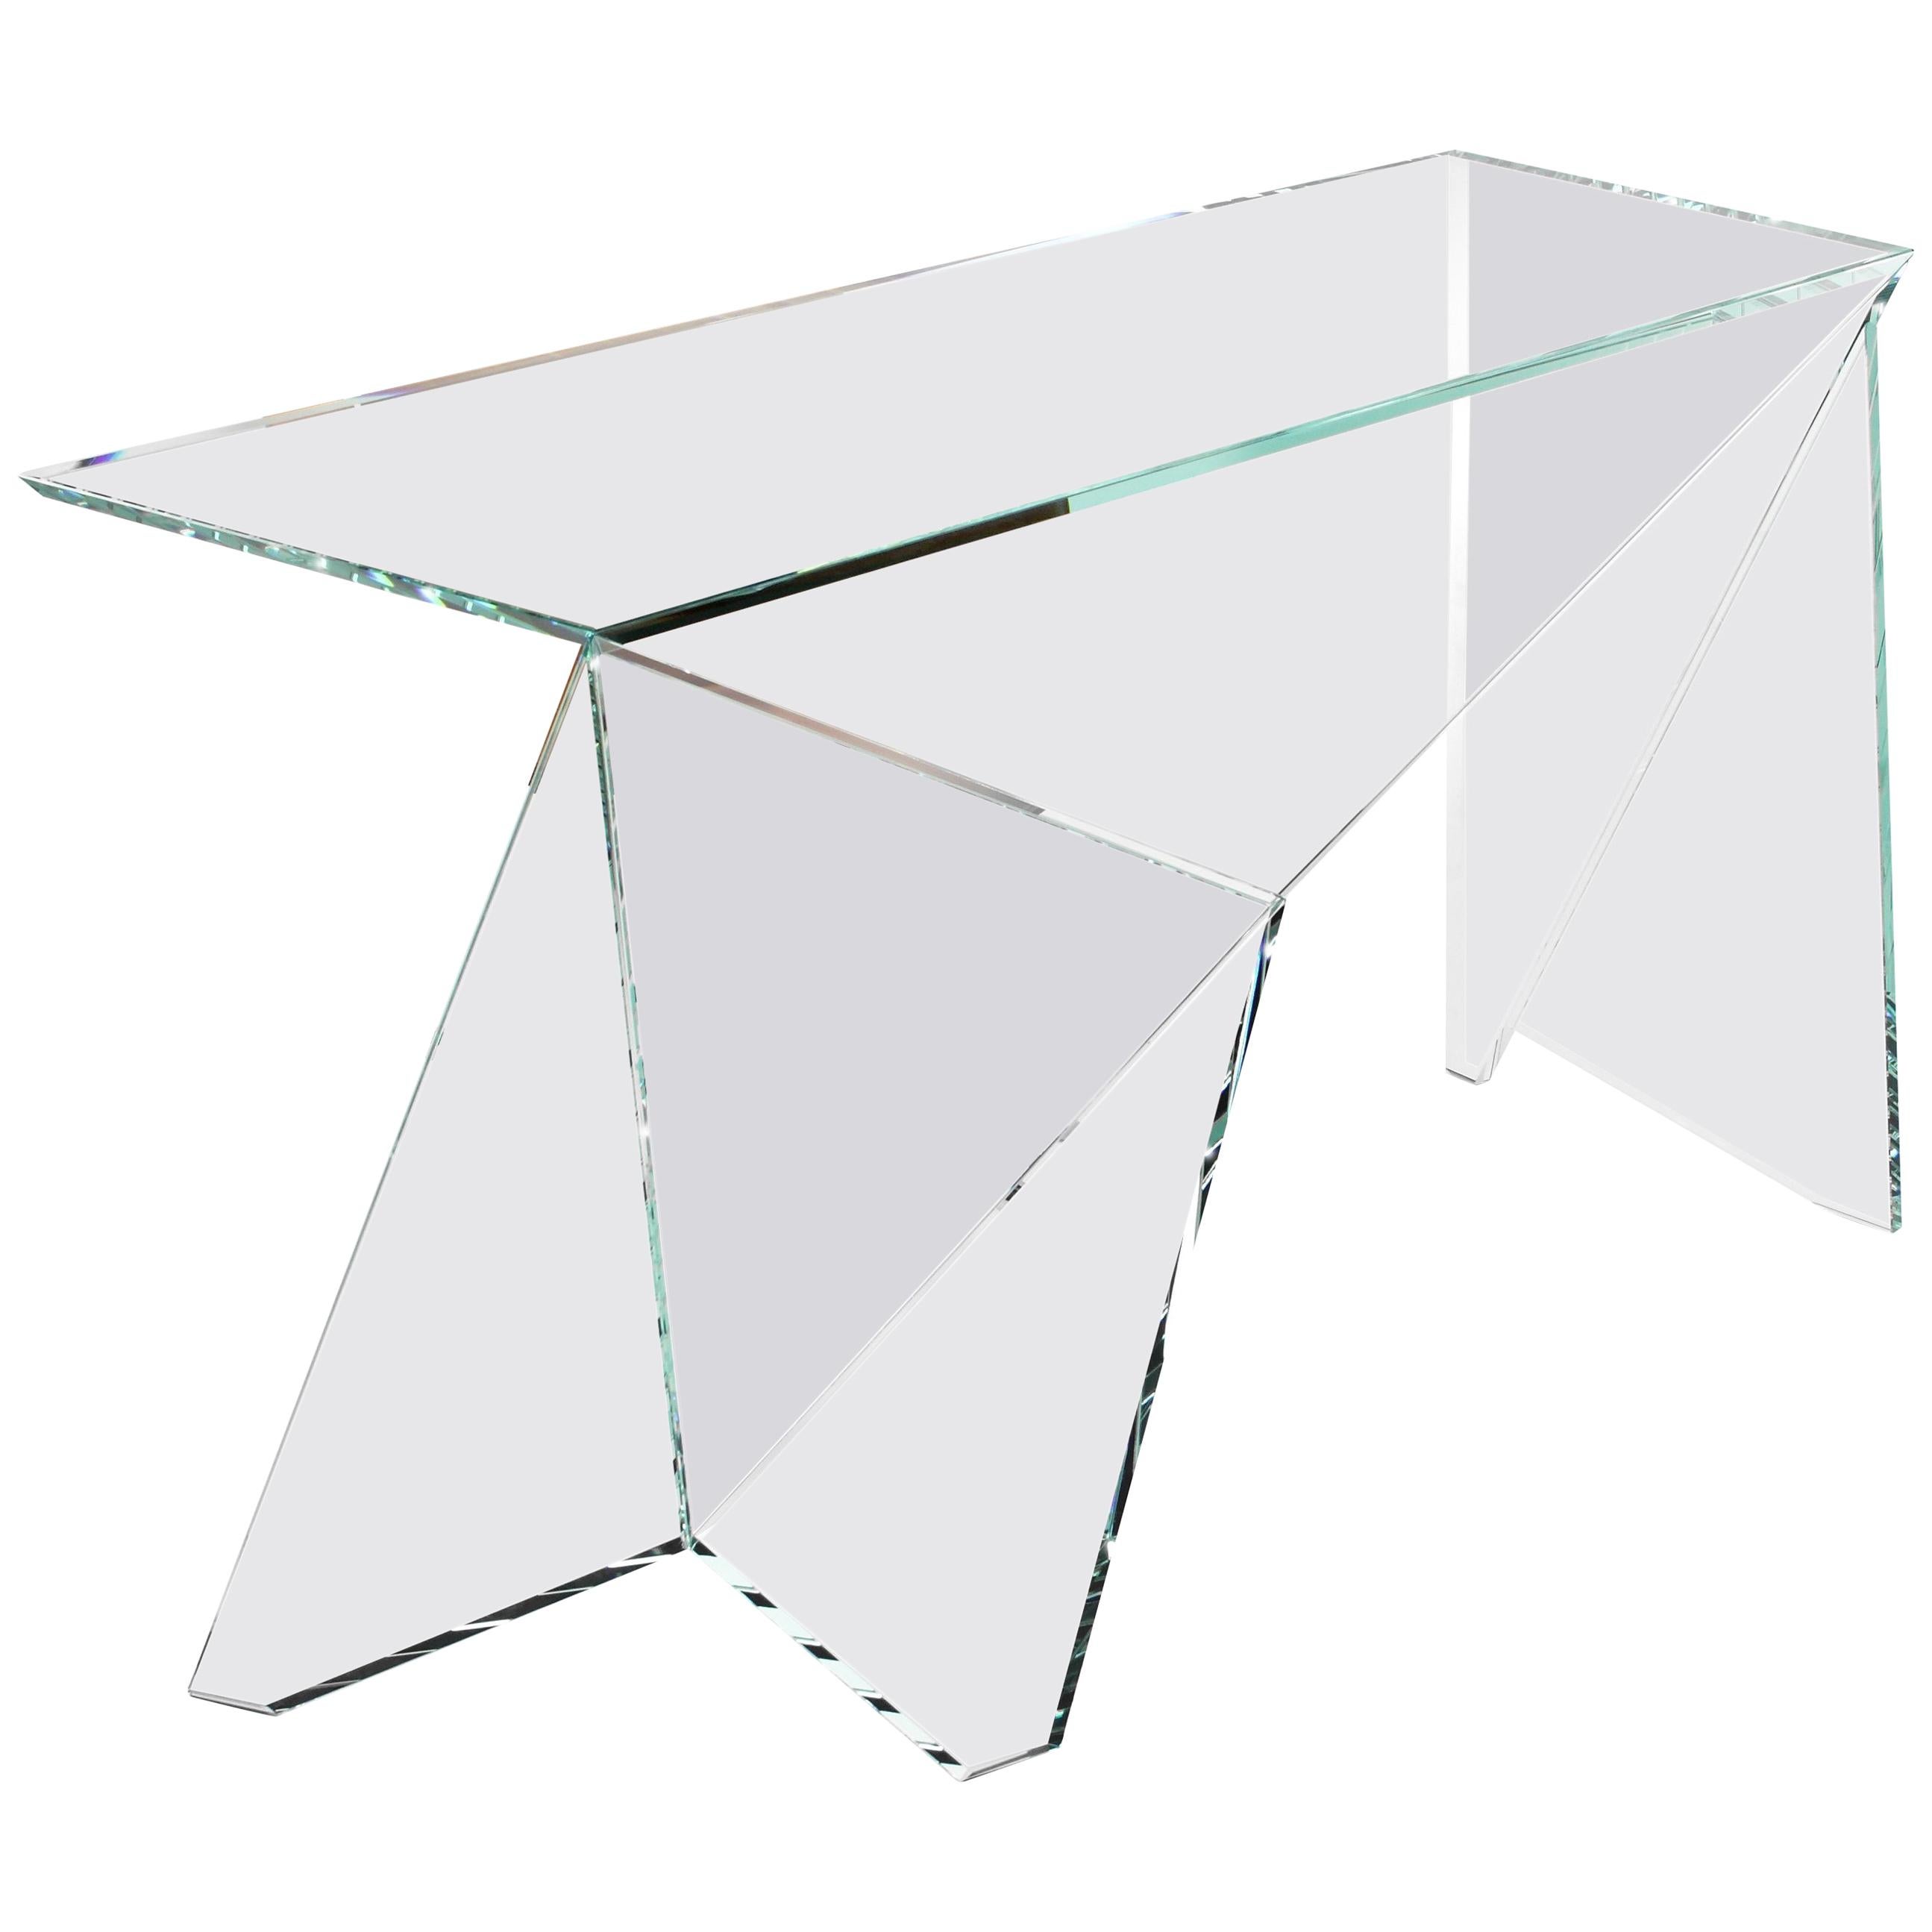 Schreibtisch oder Schreibtisch aus Kristallglas im Origami-Design mit Sammlerstücken